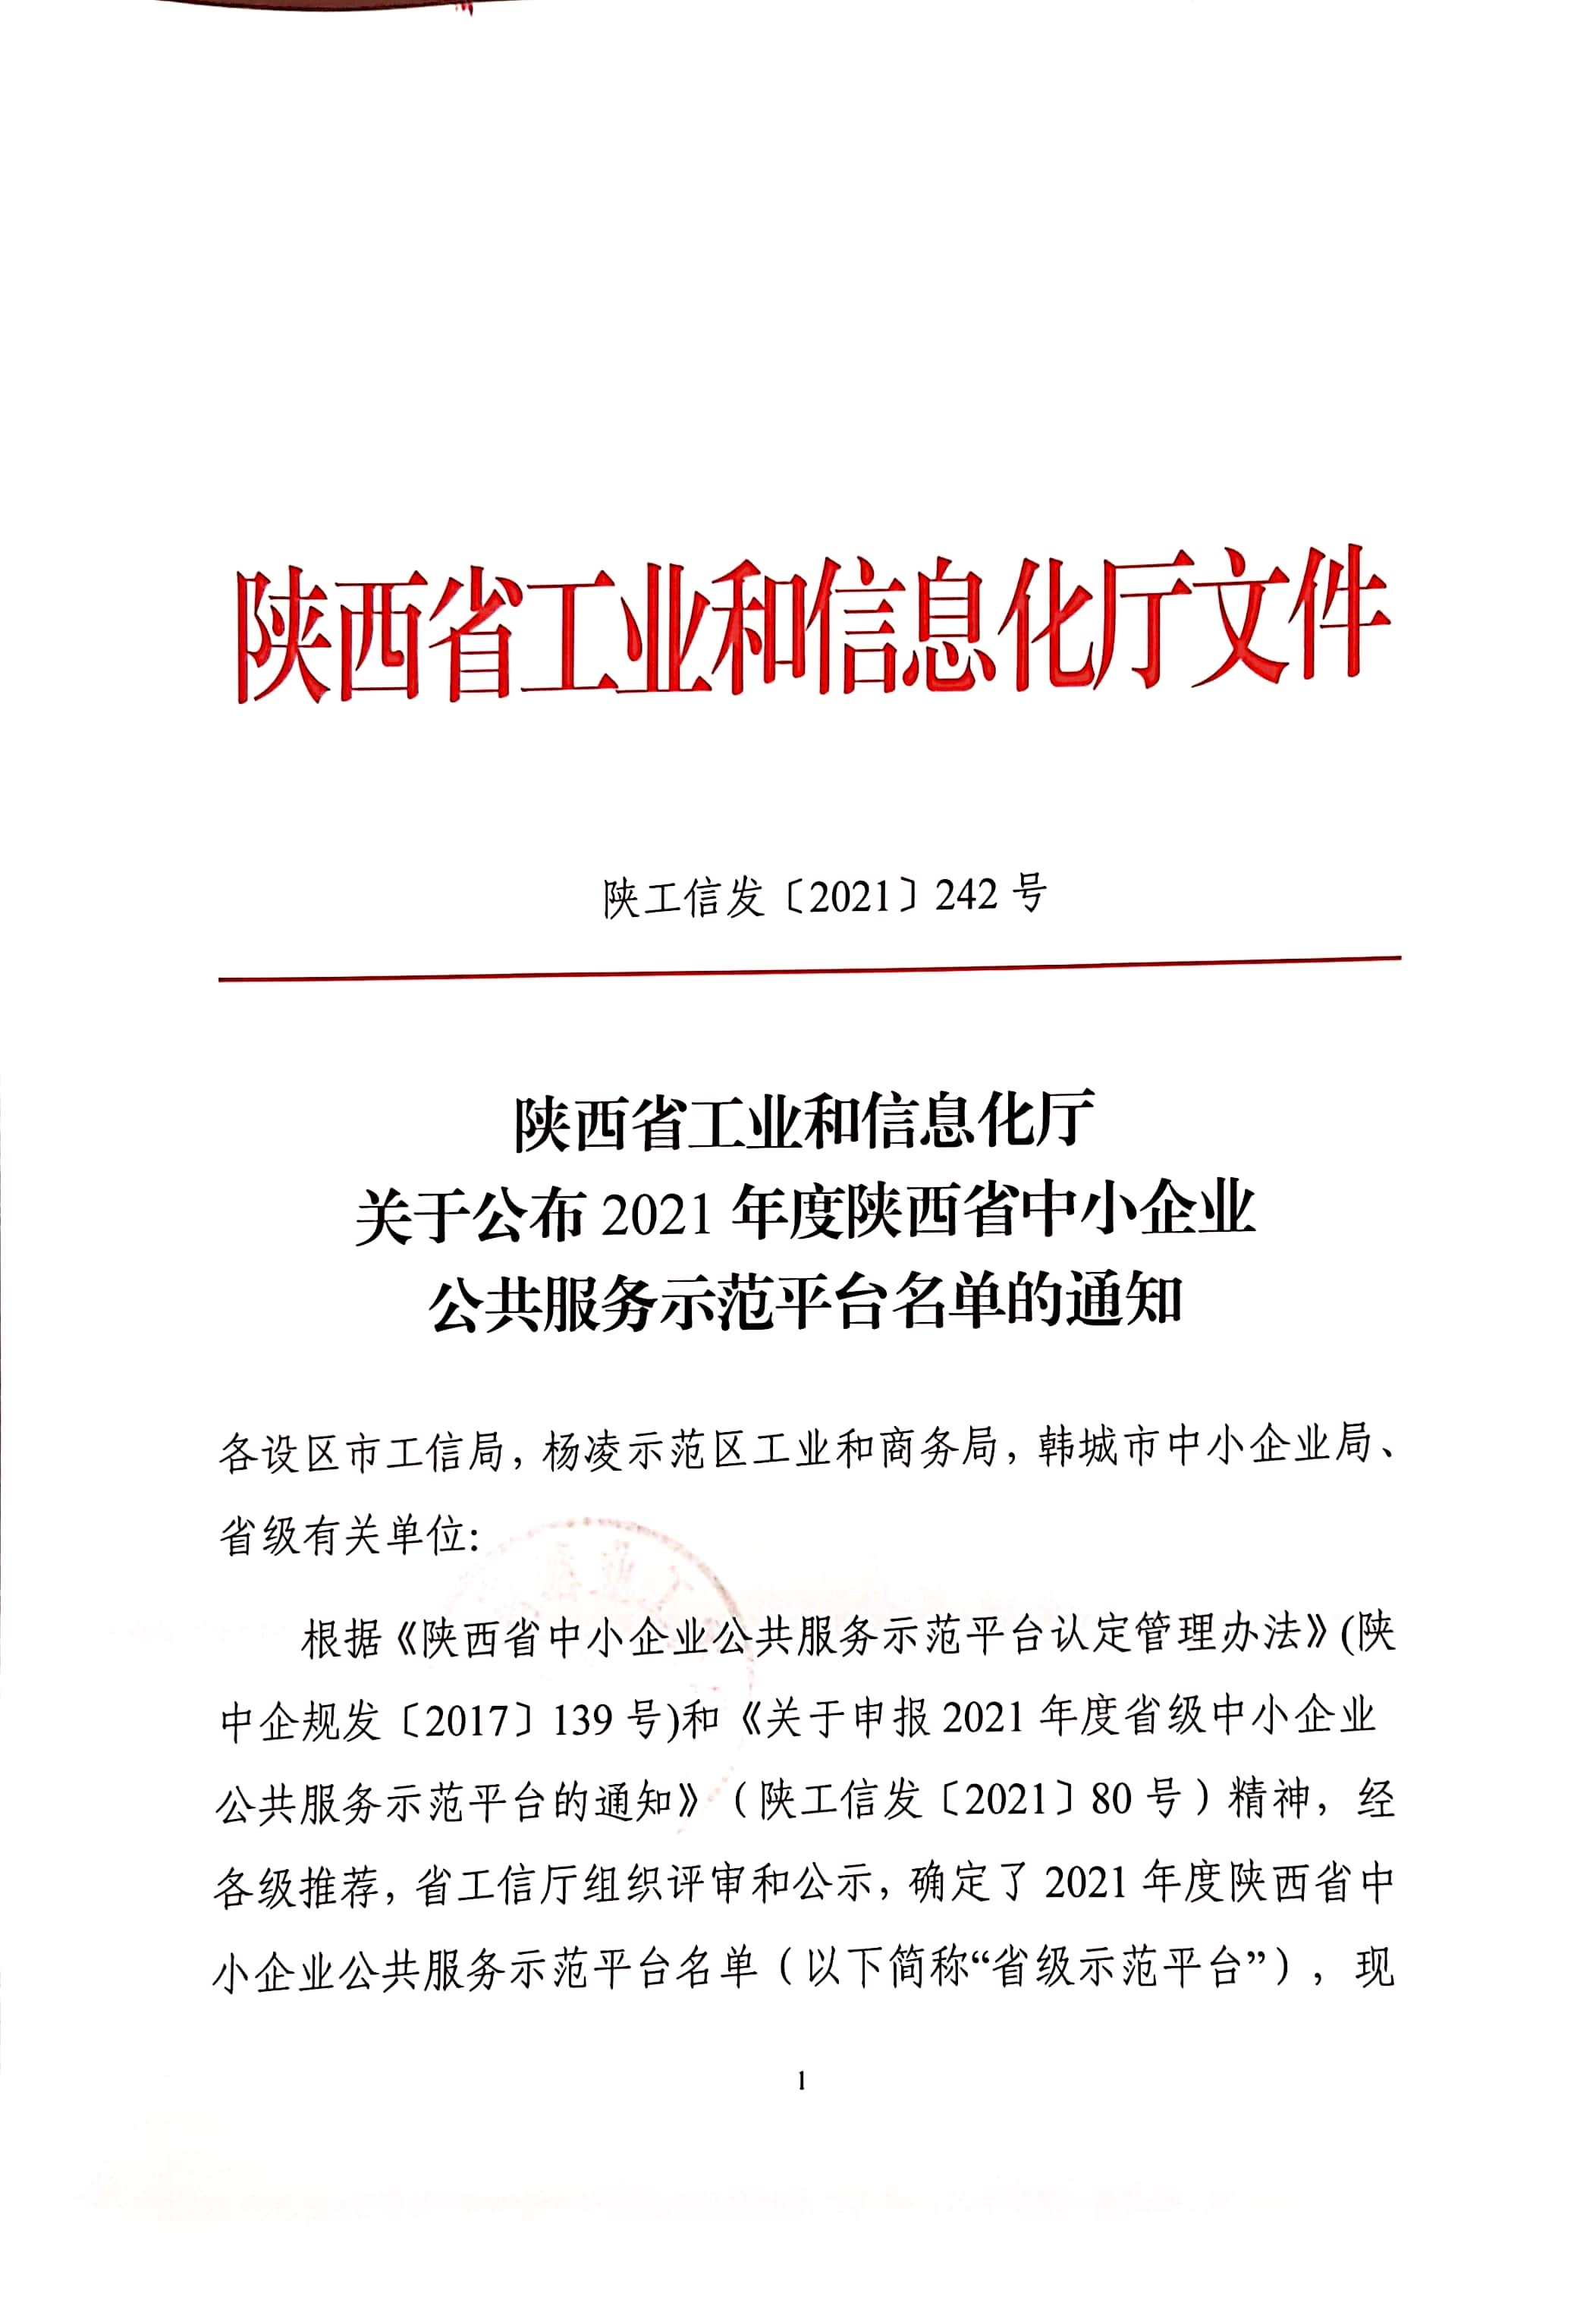 高研院入选2021年度陕西省中小企业公共服务示范平台